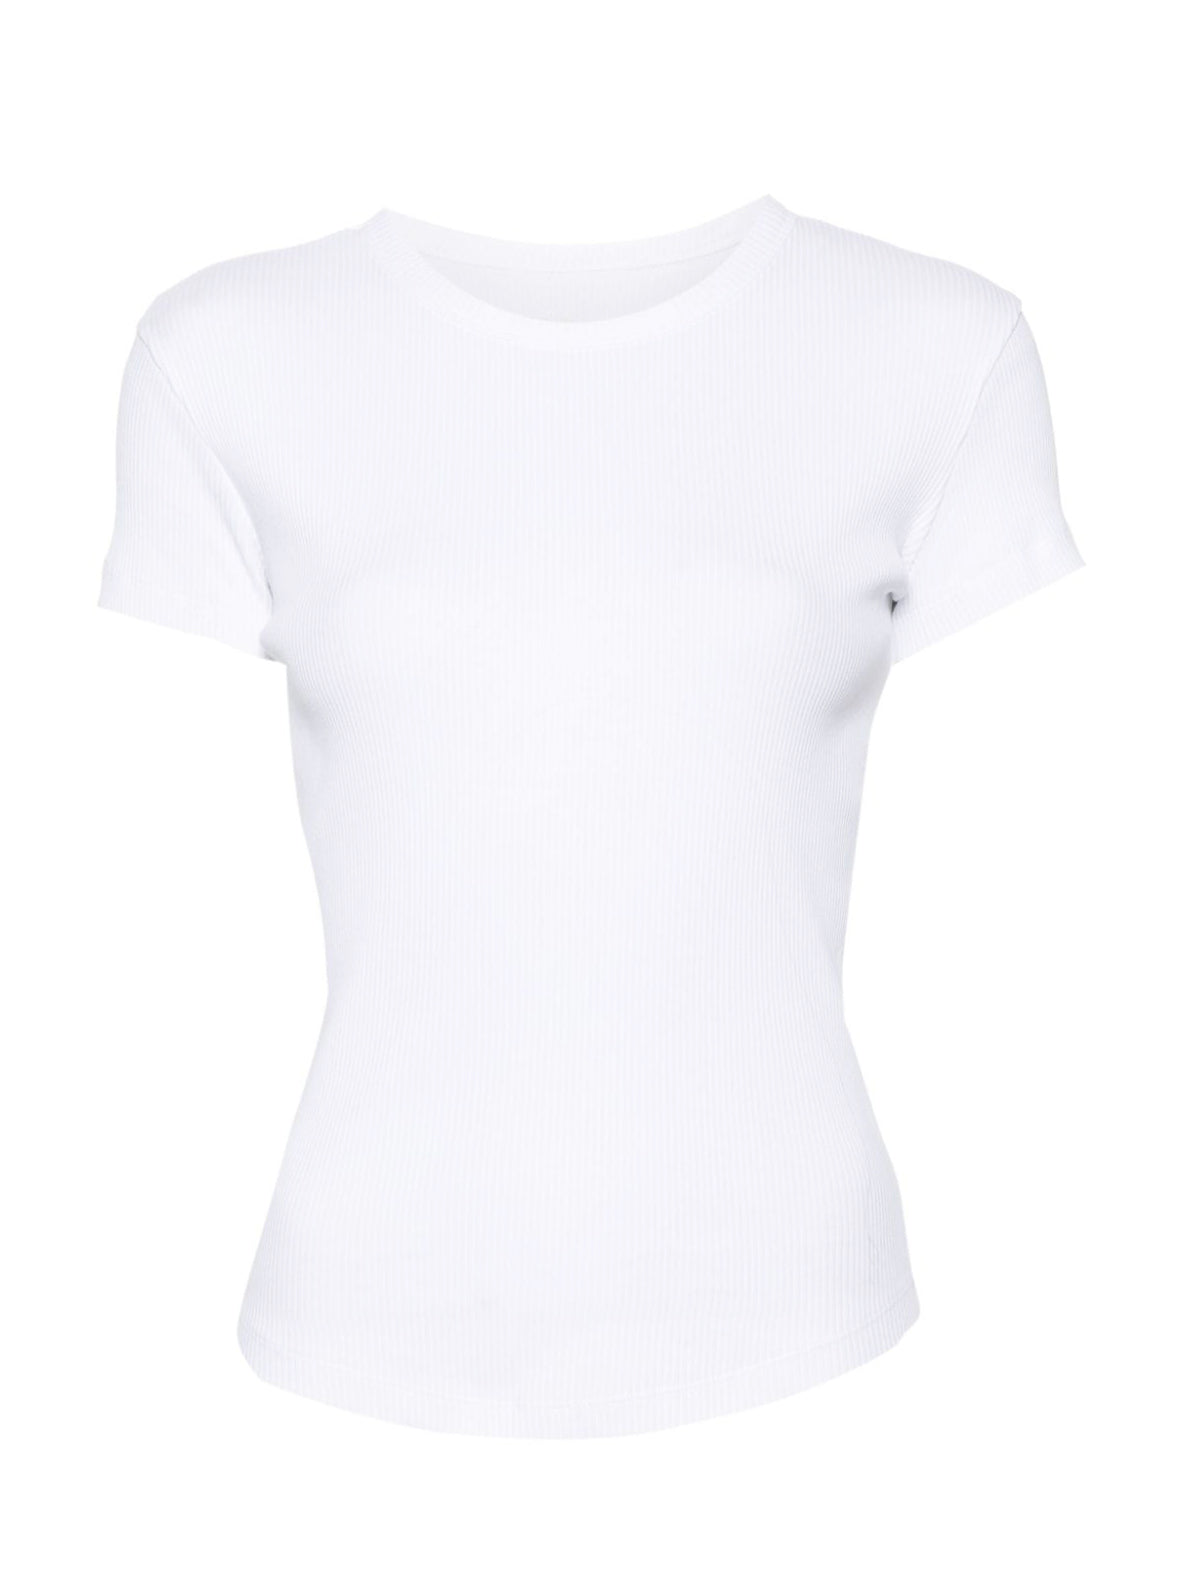 TAOMI t-shirt, white